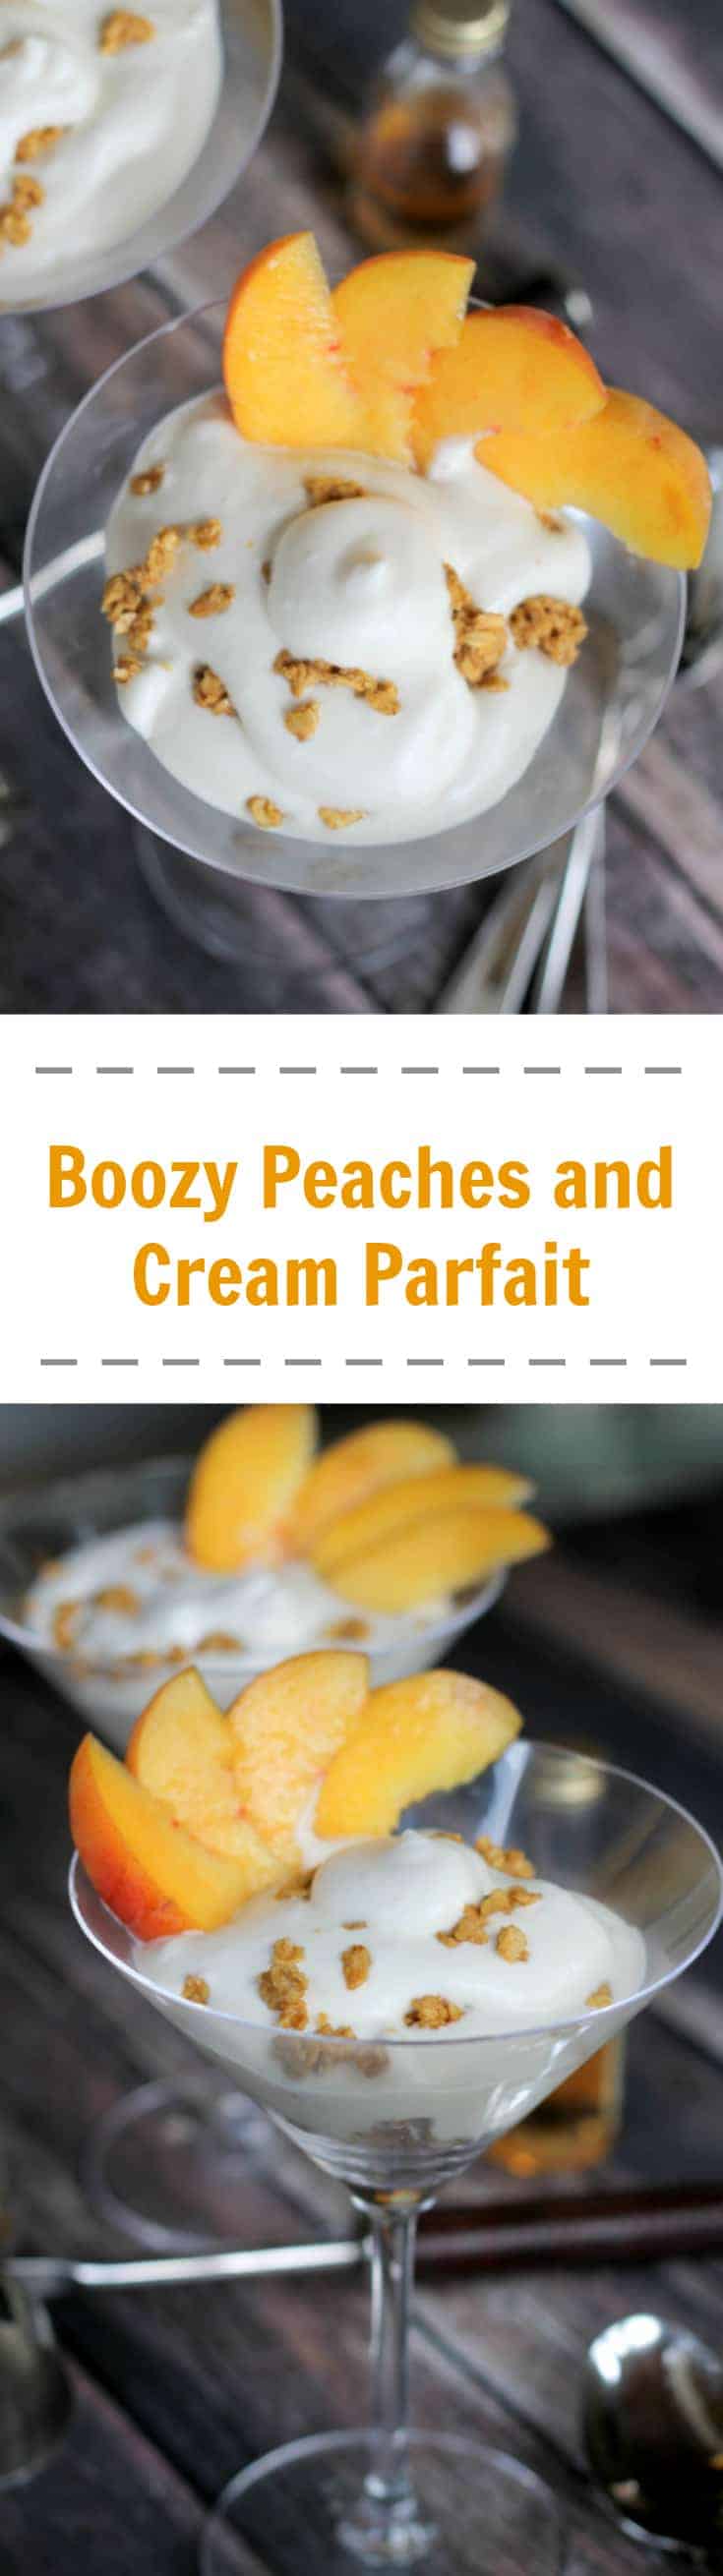 Boozy Peaches and Cream Parfait recipe